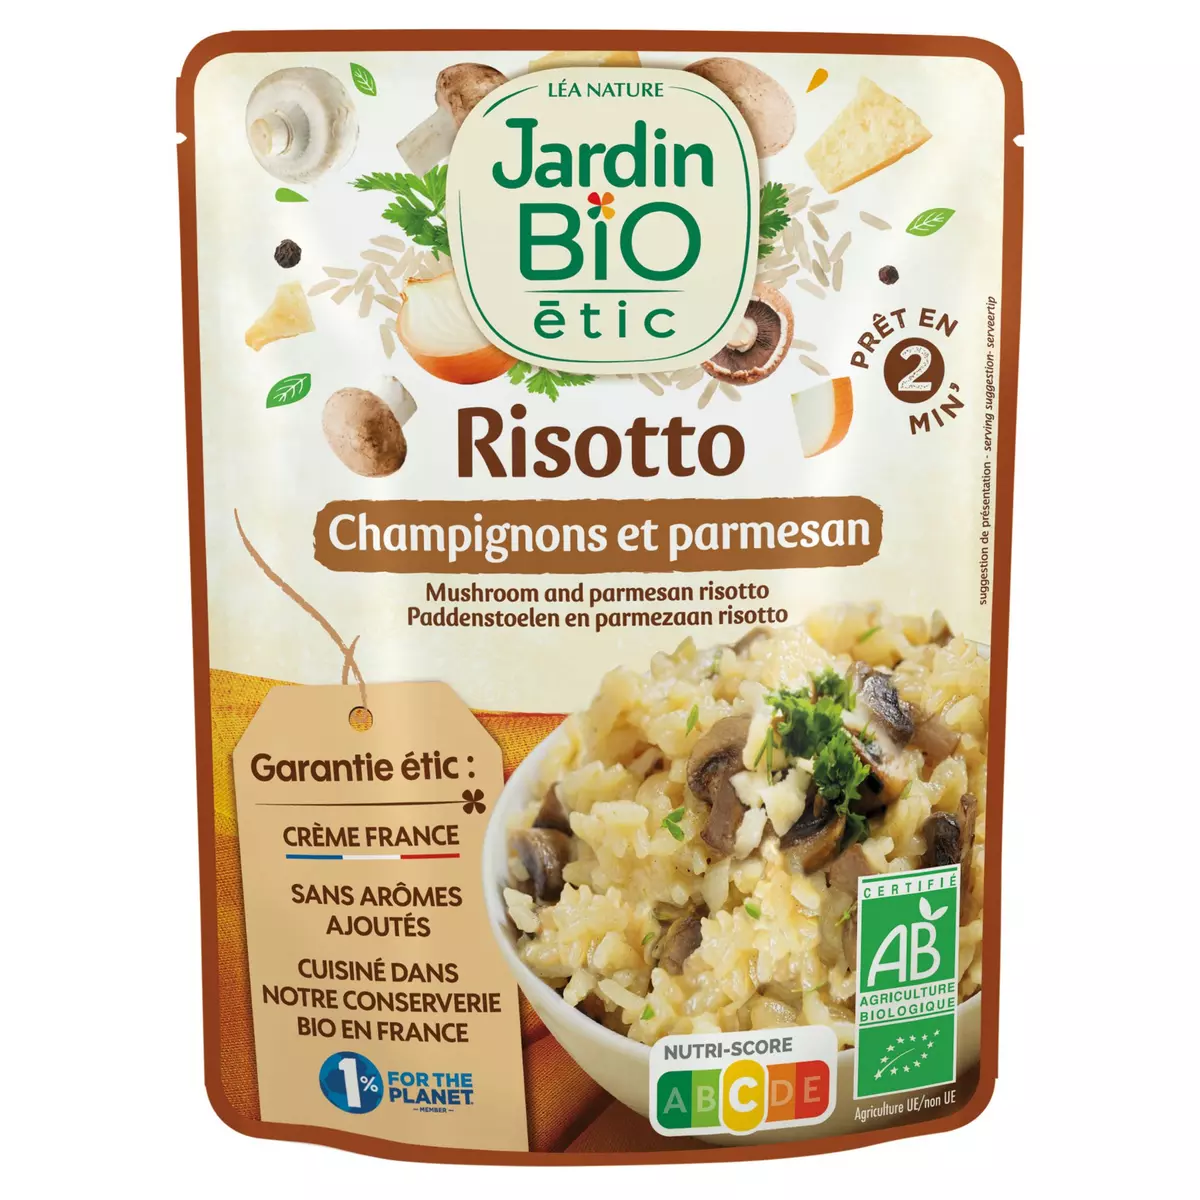 JARDIN BIO ETIC Risotto champignons et parmesan sachet express 1 personne 220g